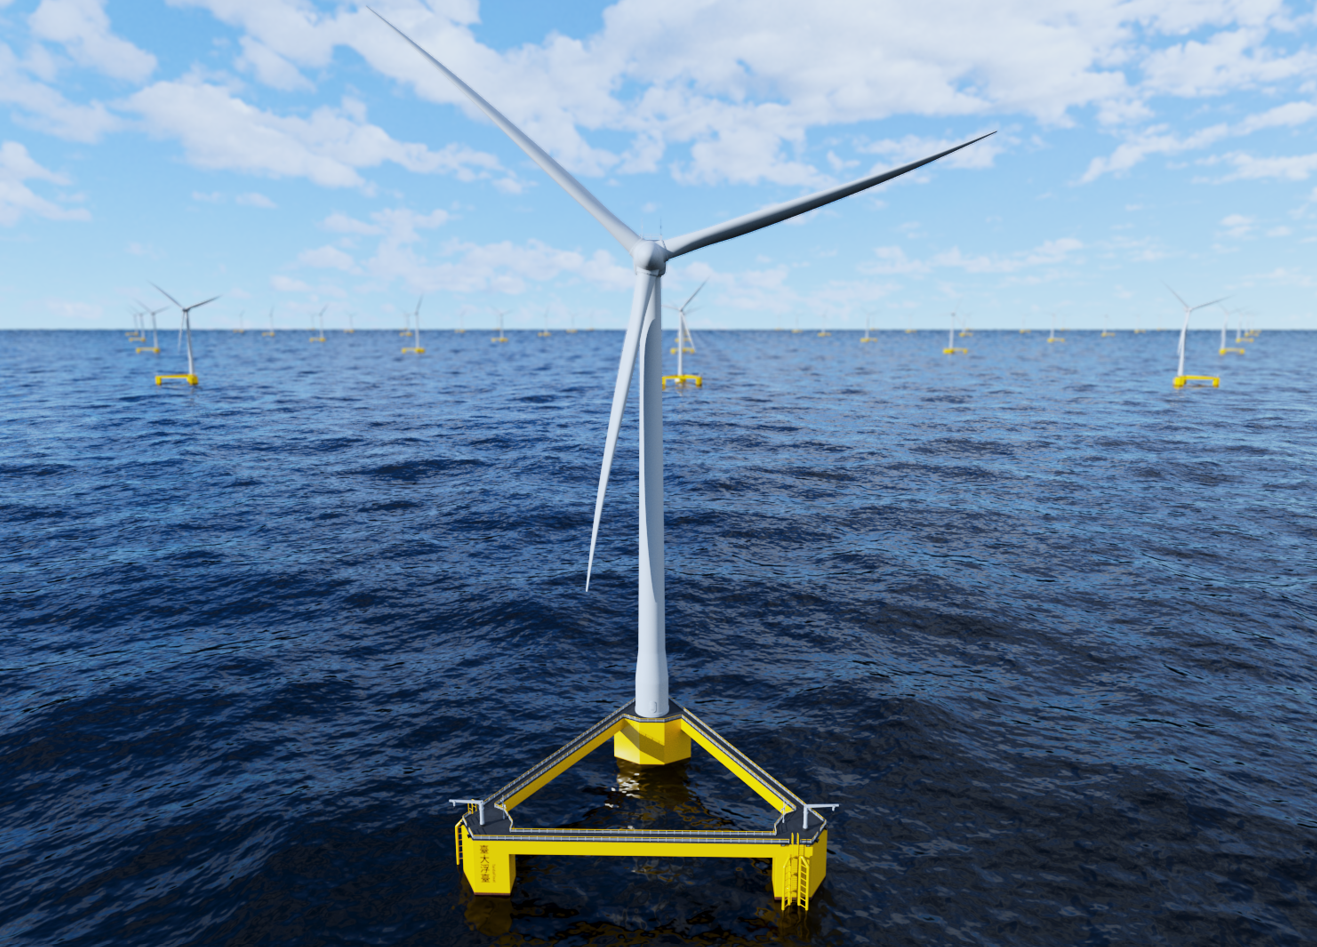 NTU: Pioneering Offshore Wind Power in the Asia-Pacific Region